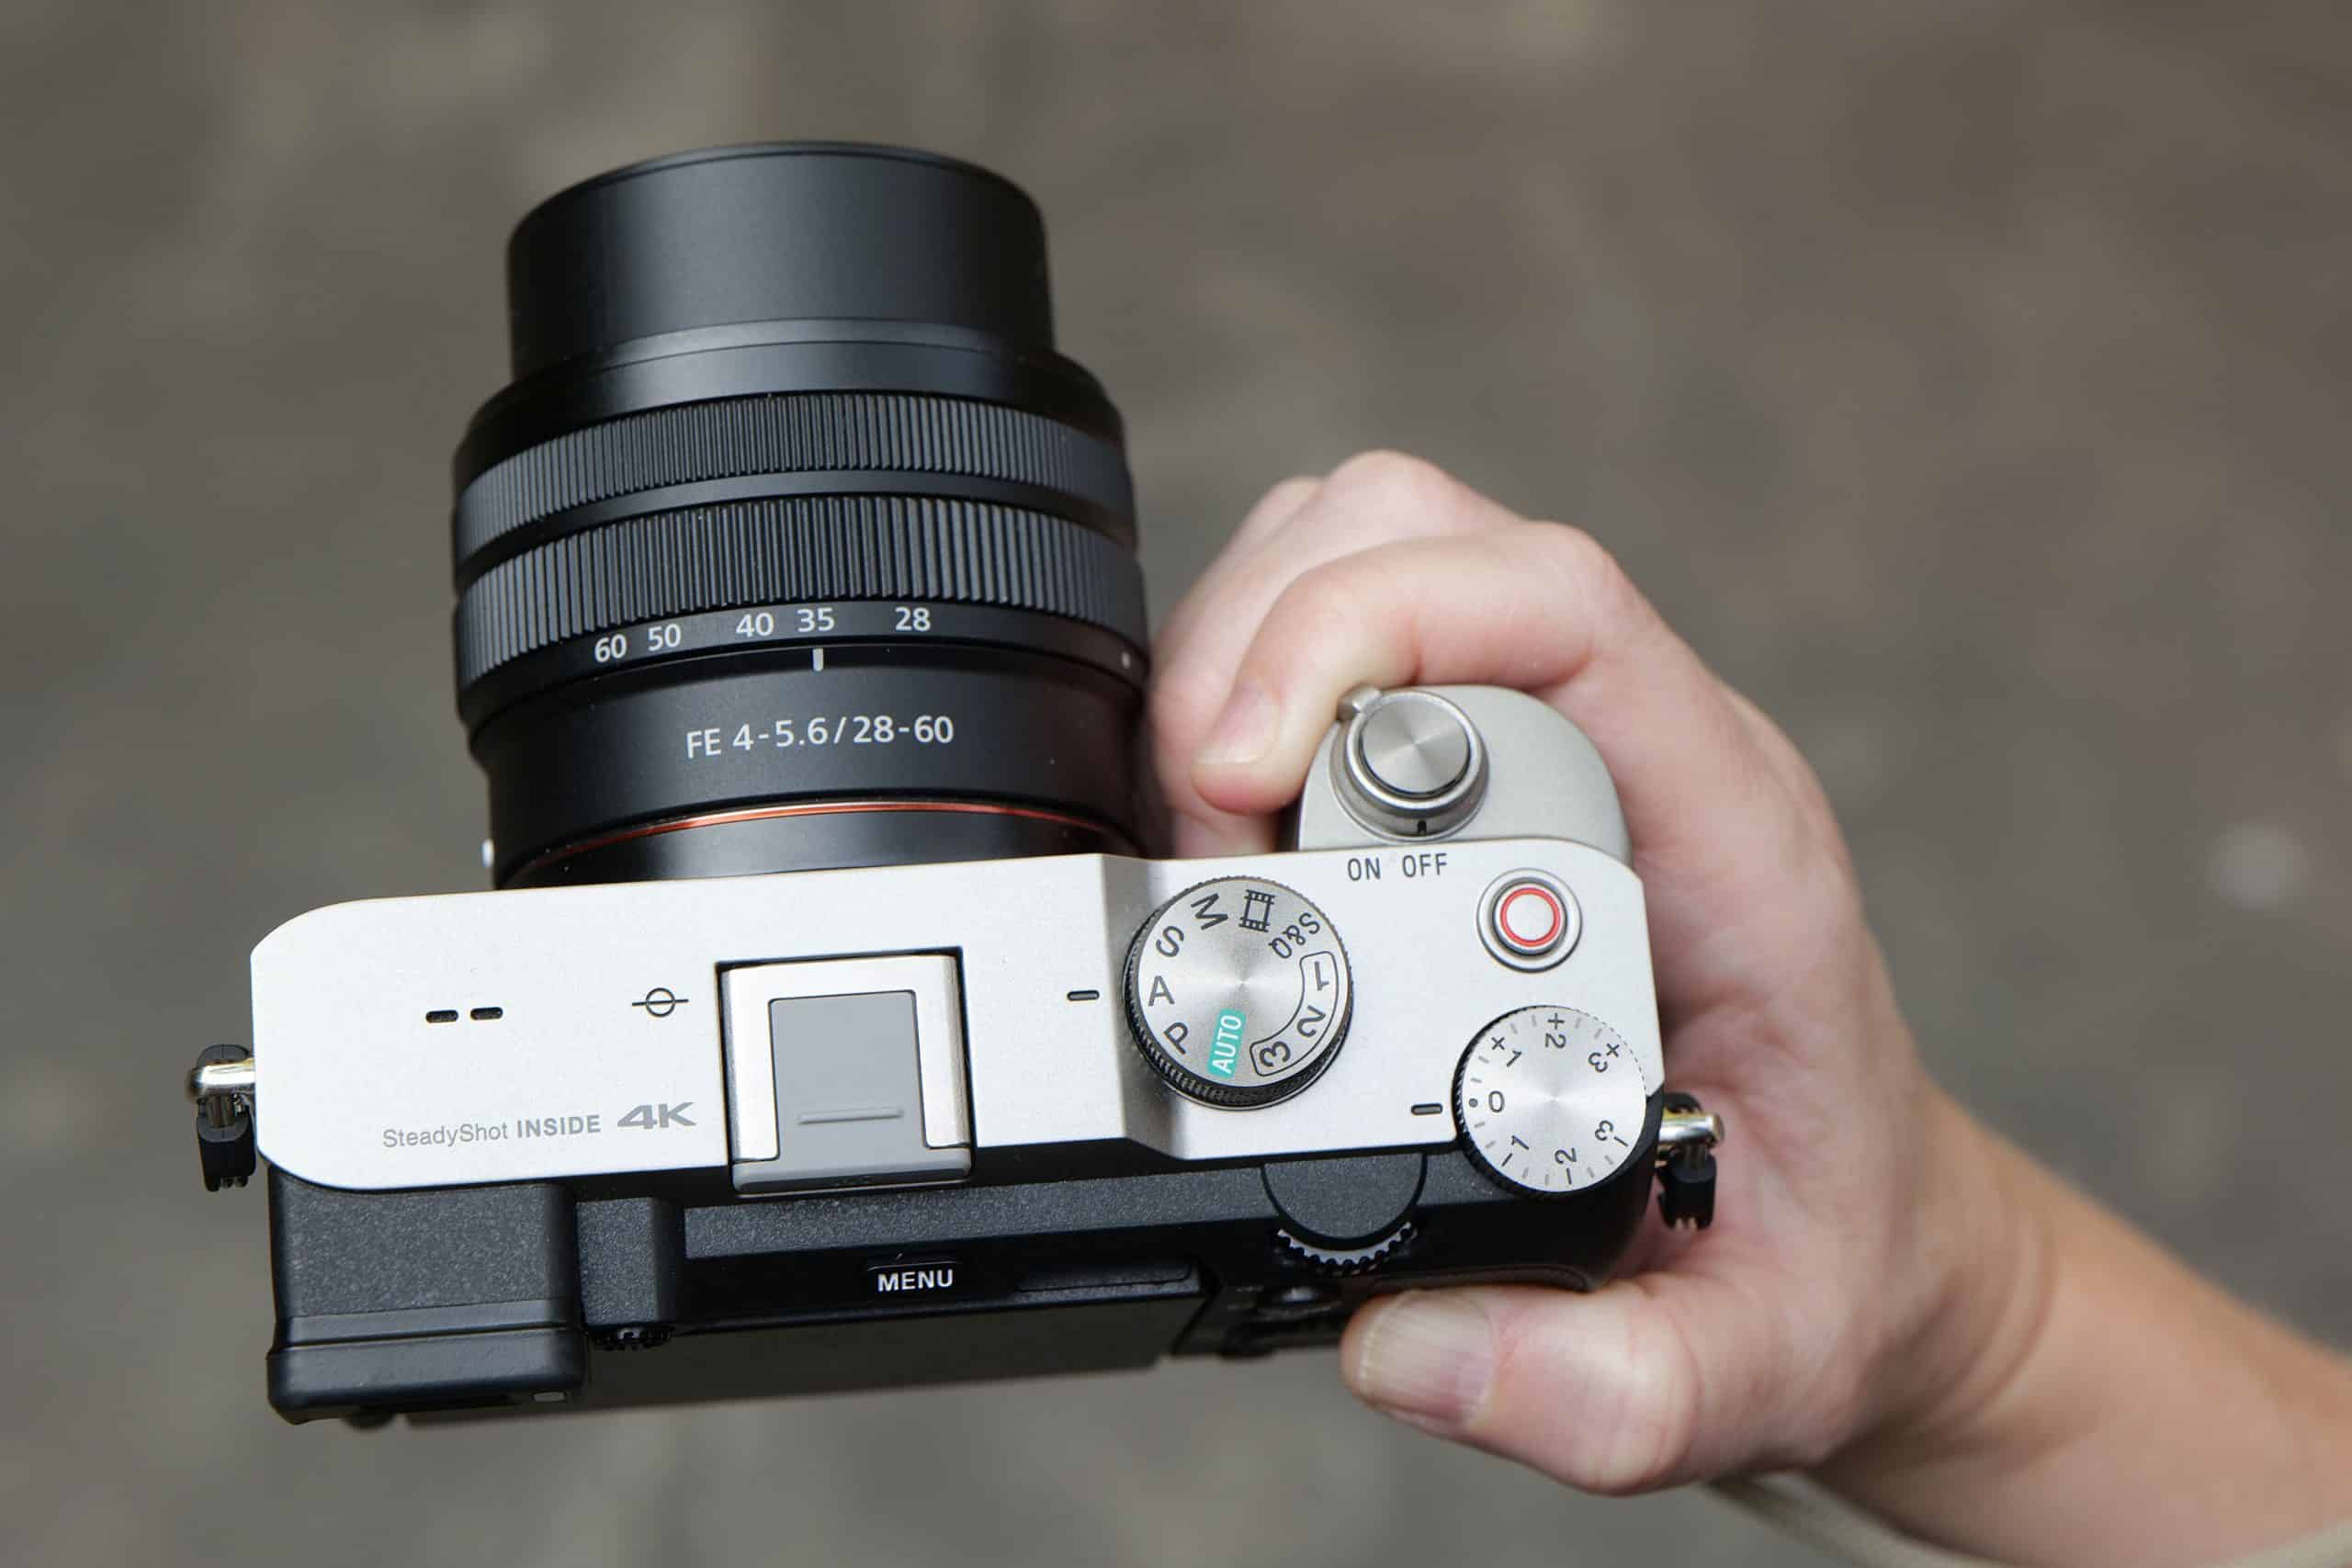 TẾT SUM VẦY - KHOẢNH KHẮC ĐONG ĐẦY, khuyến mãi dịp Tết giảm giá các máy ảnh và ống kính Sony